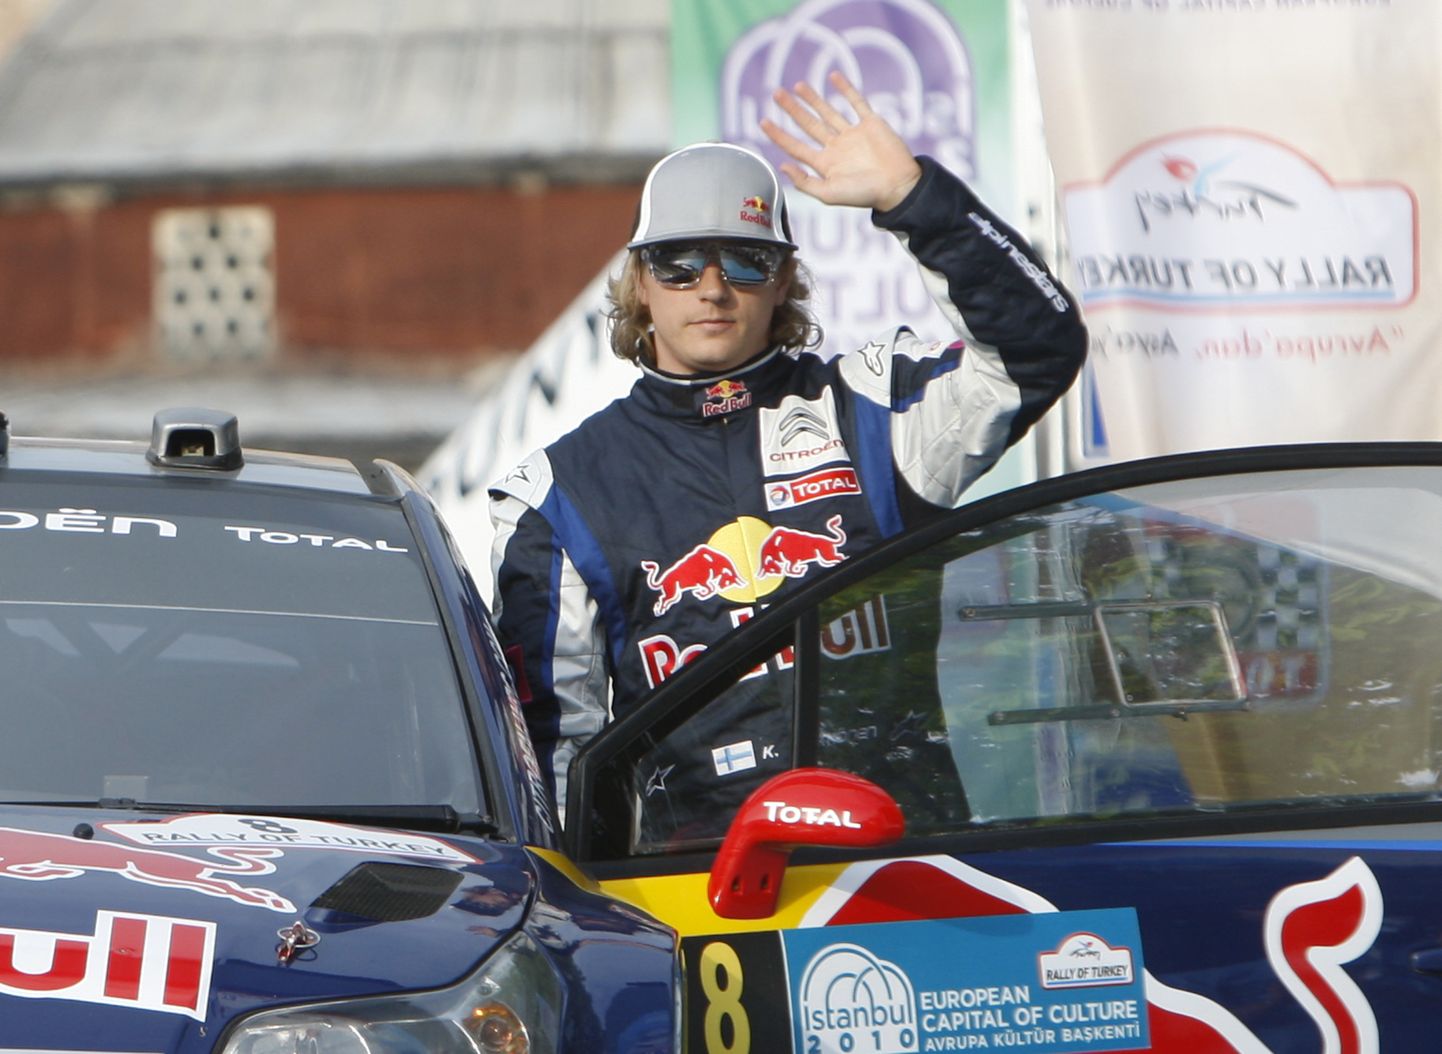 Kas Kimi Räikkönen istub taas WRC-auto rooli? MM-sarjas osales ta 2010. ja 2011. aastal.